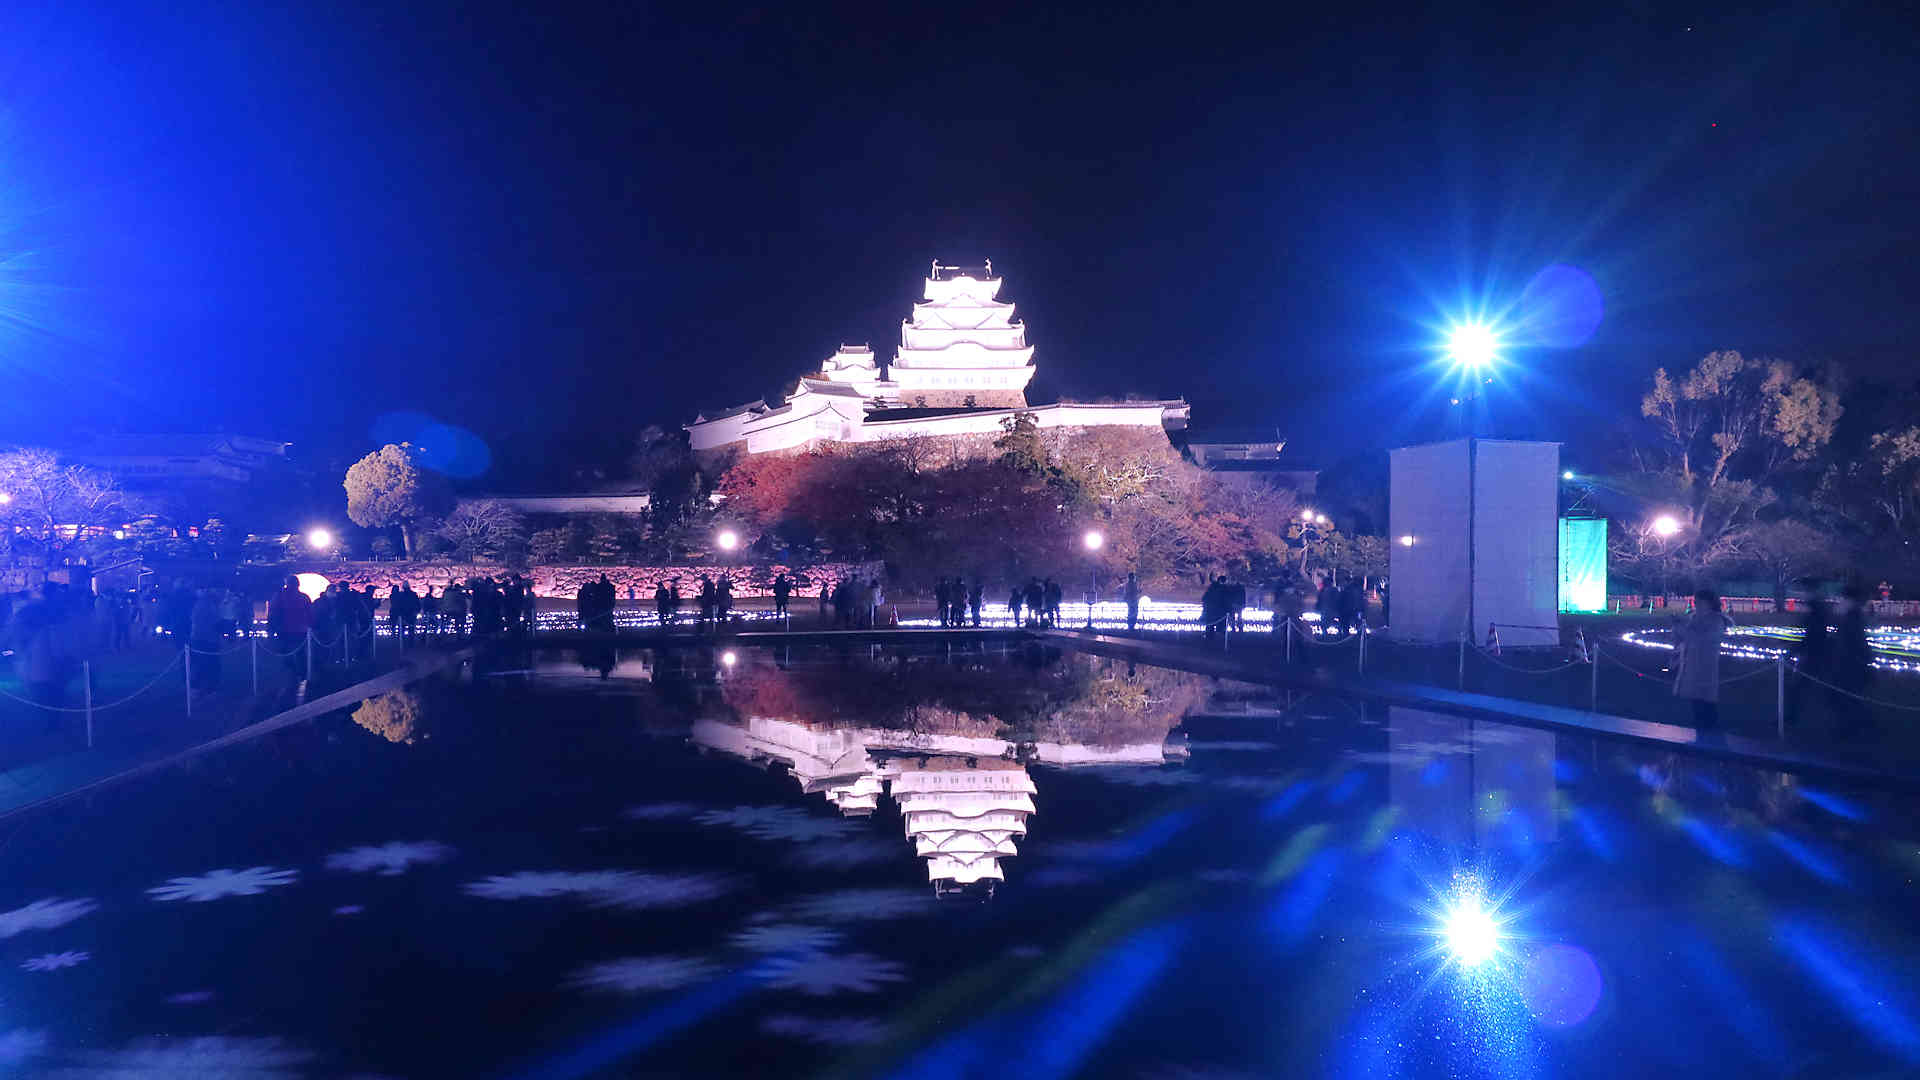 三の丸広場に設置された巨大な水鏡に映る逆さ姫路城